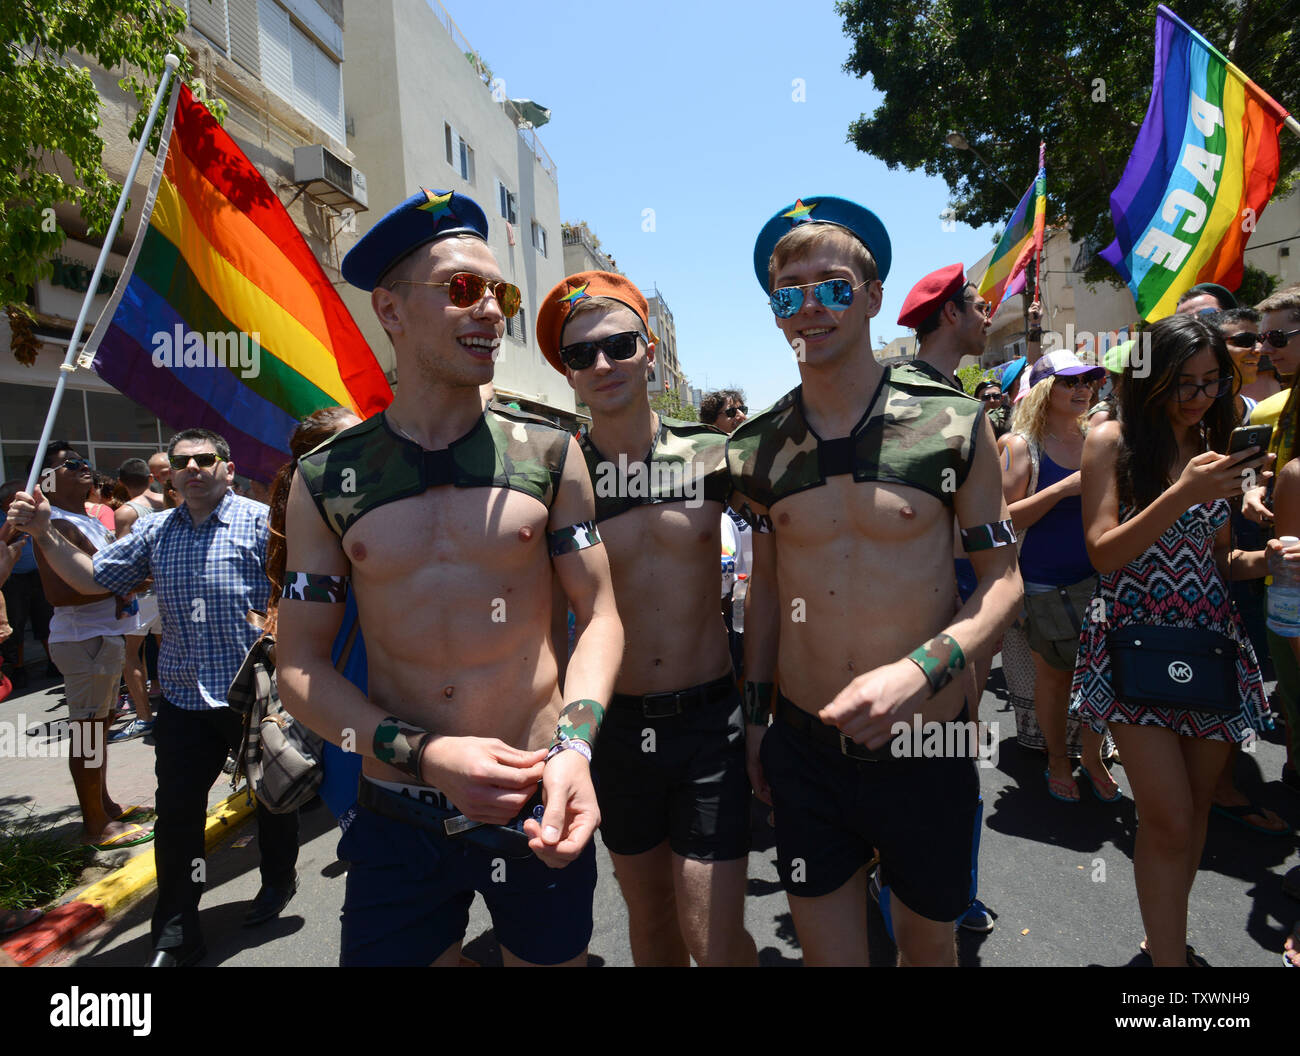 Les touristes gay porter des costumes dans la 17e édition de la Gay Pride Parade à Tel Aviv, Israël, le 12 juin 2015. Plus de 180 000 ont défilé à la parade, dont 30 000 touristes. Le thème de la parade était 'Tel Aviv aime tous sexes' dans un effort pour promouvoir l'égalité des droits aux membres de la communauté transgenre. Photo par Debbie Hill/UPI Banque D'Images